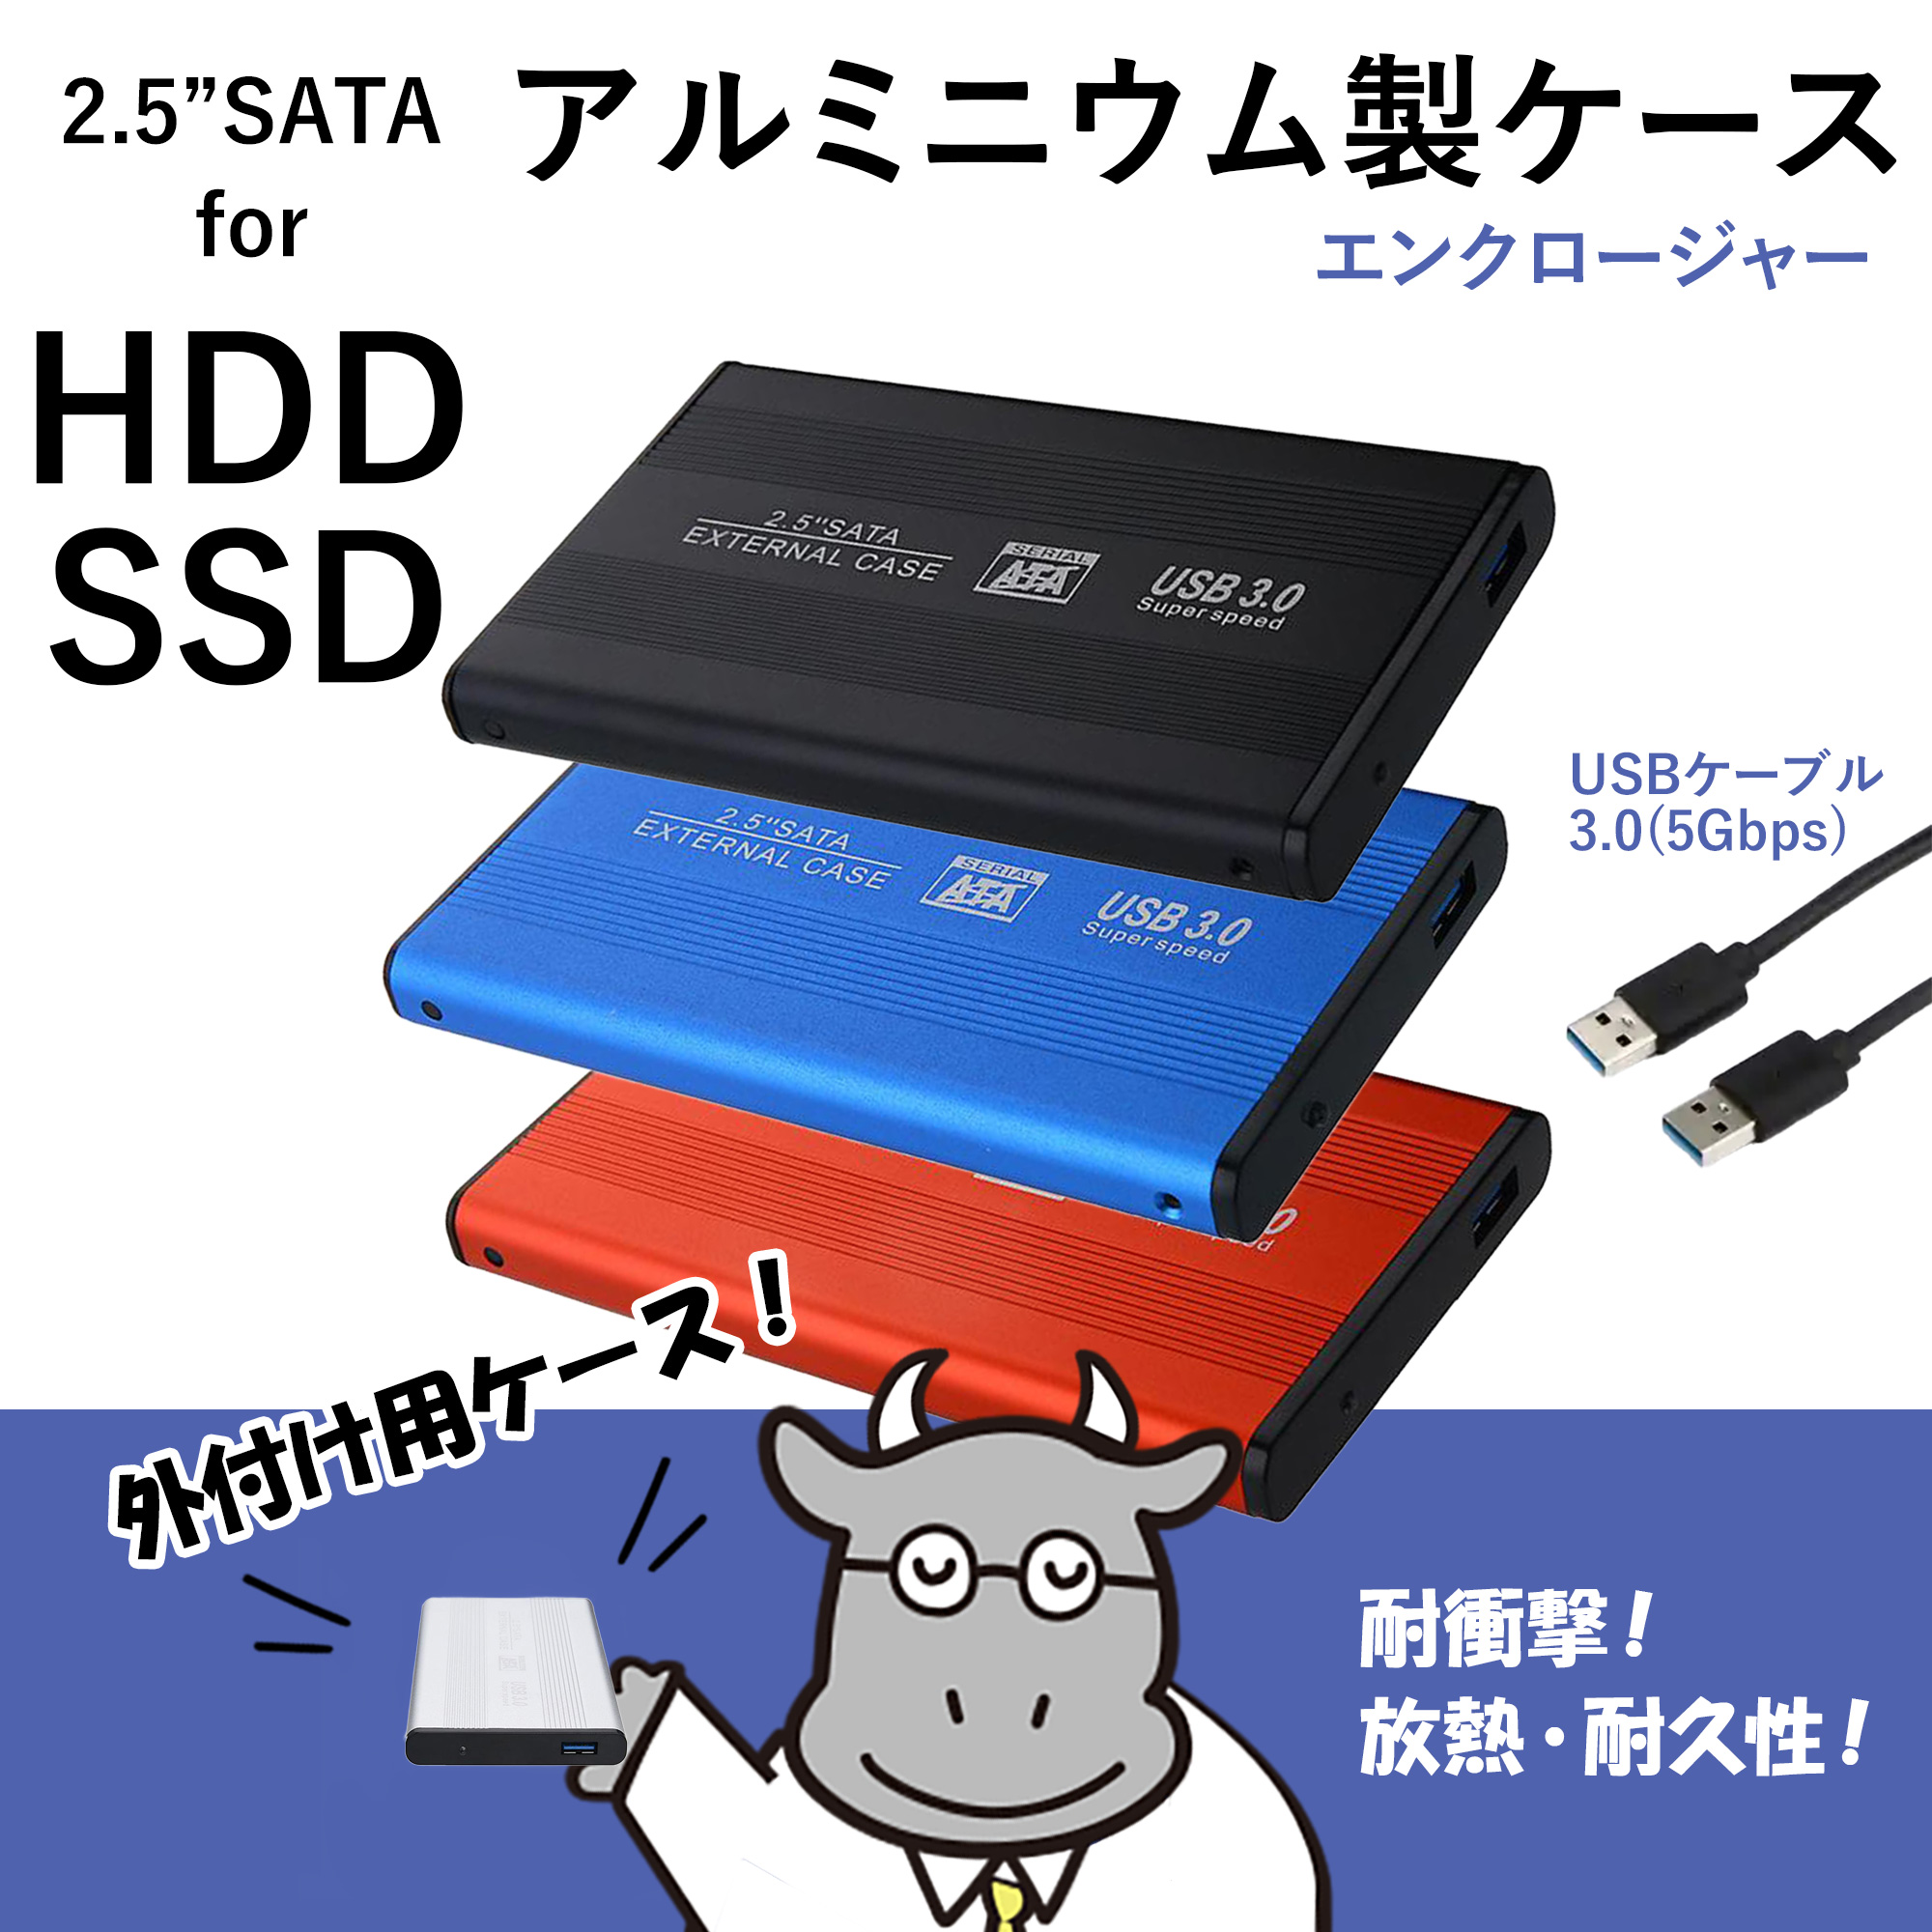 人気 特価販売中 【アルミ エンクロージャー】HDDケース 2.5 